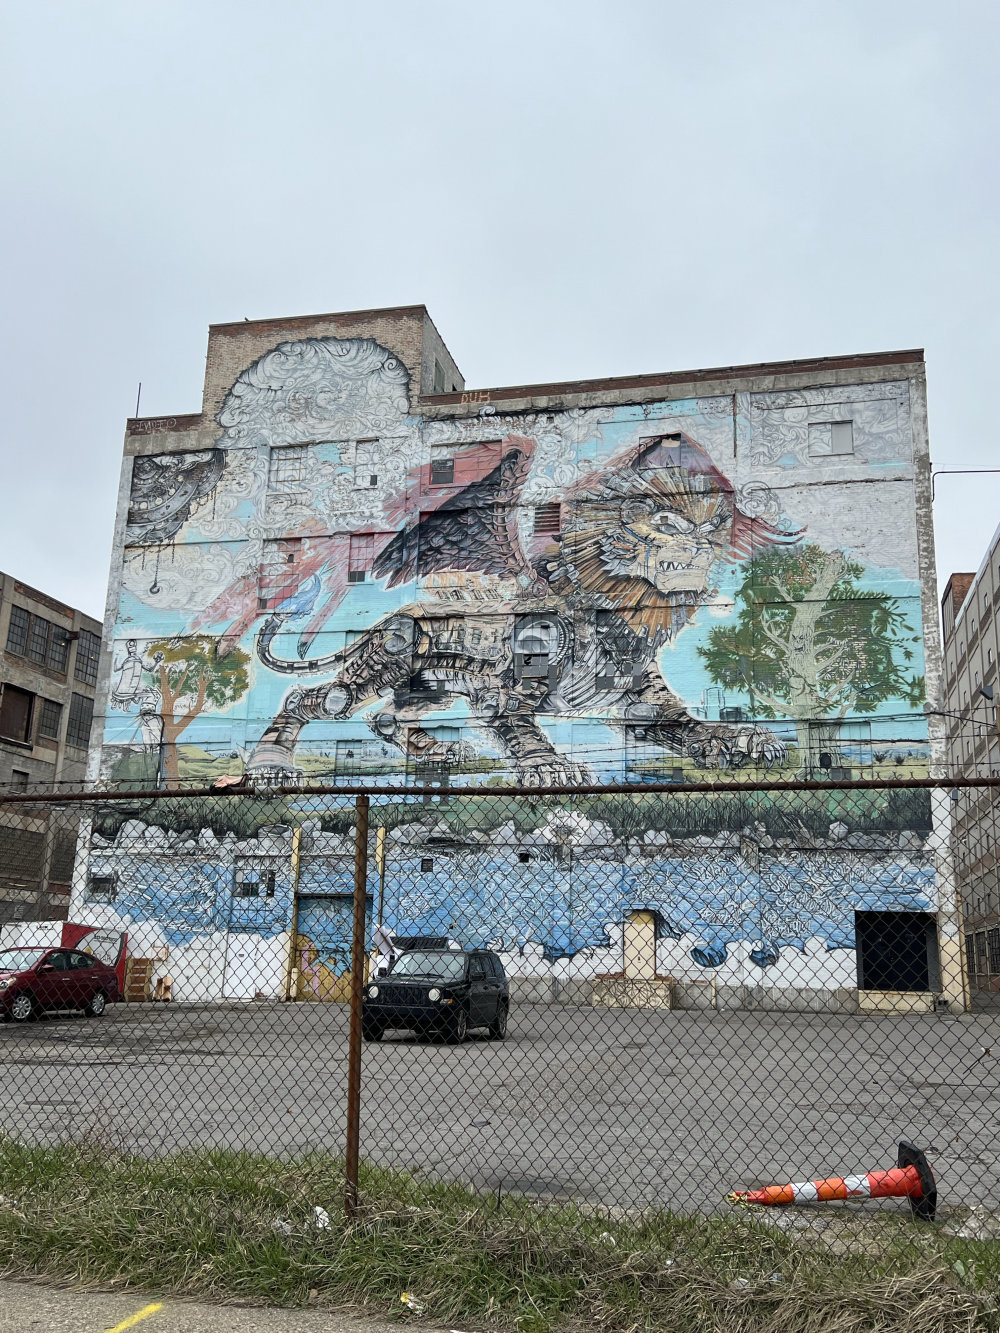 mural in Detroit by artist Kobie Solomon.